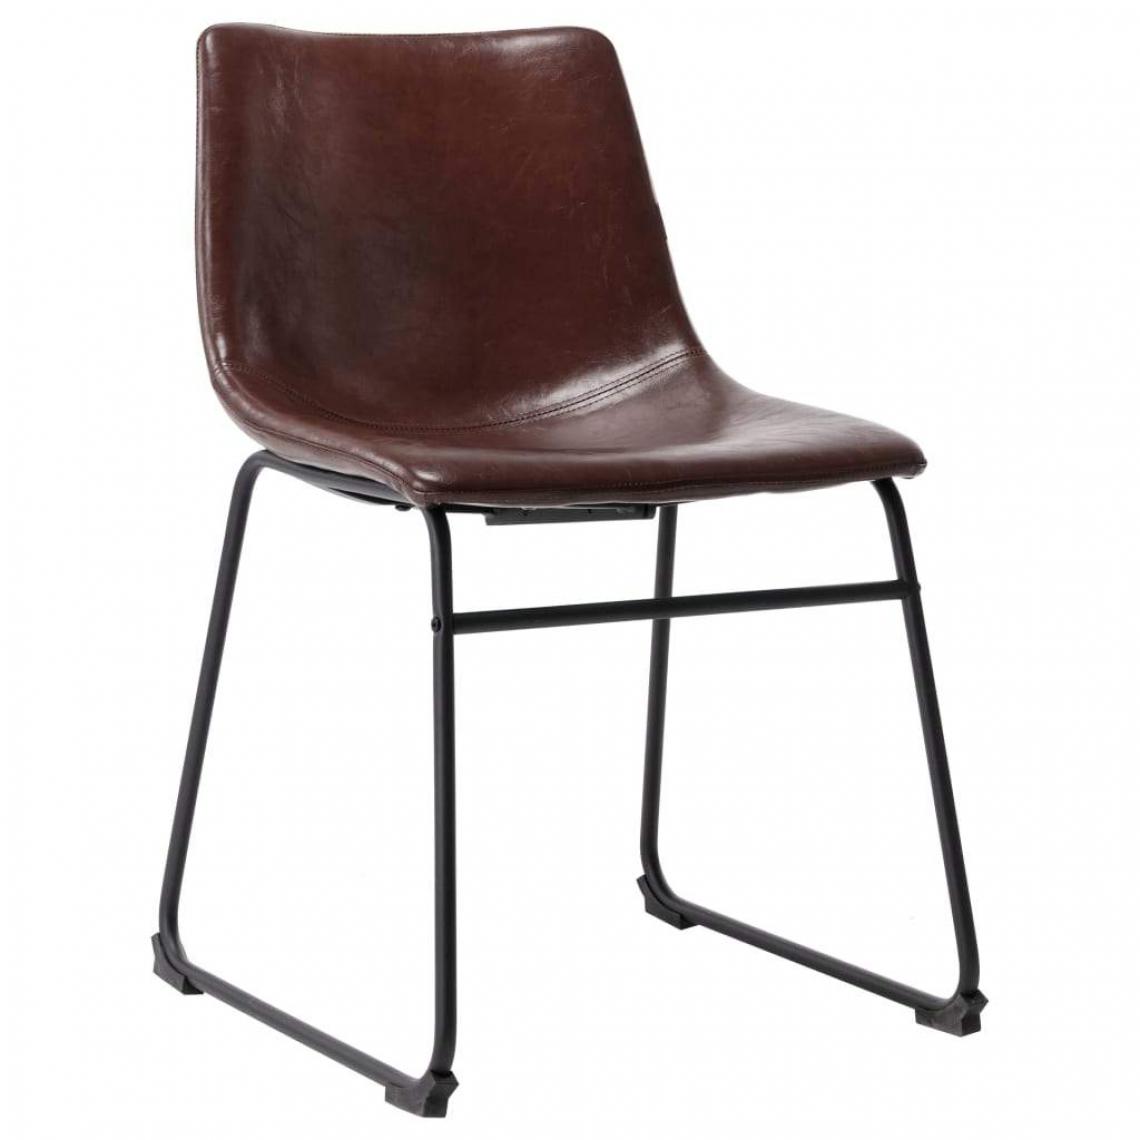 Decoshop26 - Chaise de salle à manger design simple cadre en acier en similicuir marron brillant CDS020050 - Chaises